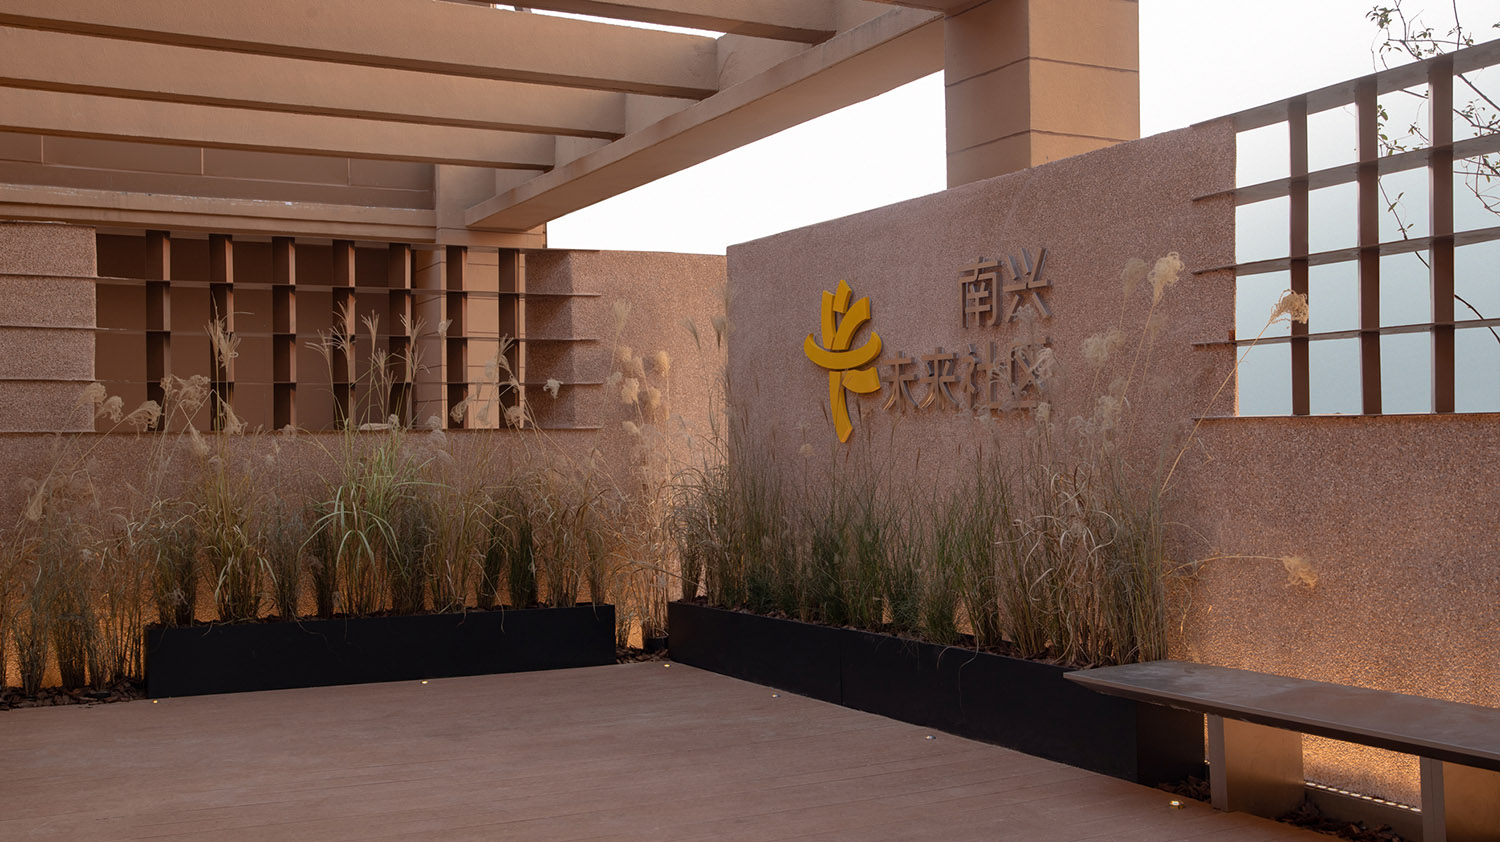 社区服务中心设计,未来邻里新社区,公共空间设计,杭州南兴里未来城市人文社区,杭州,TOMO東木筑造